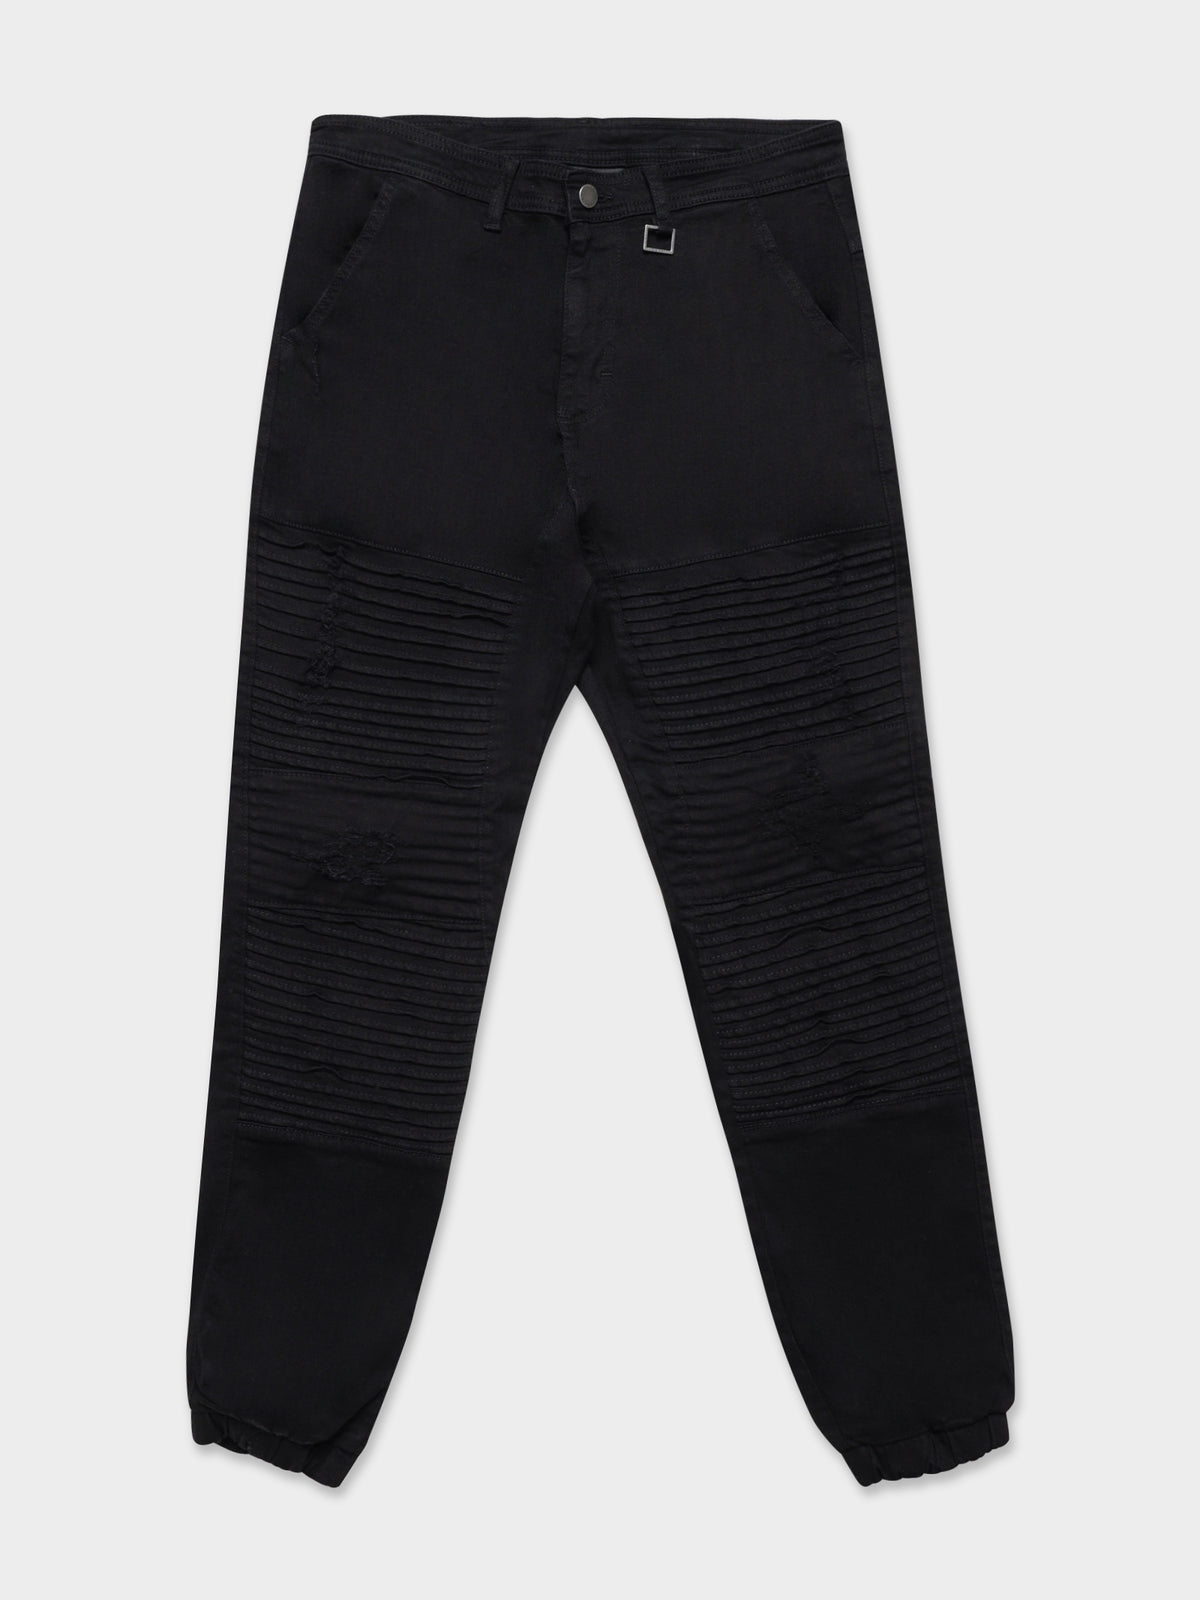 Falcon Moto Denim Jeans in Black